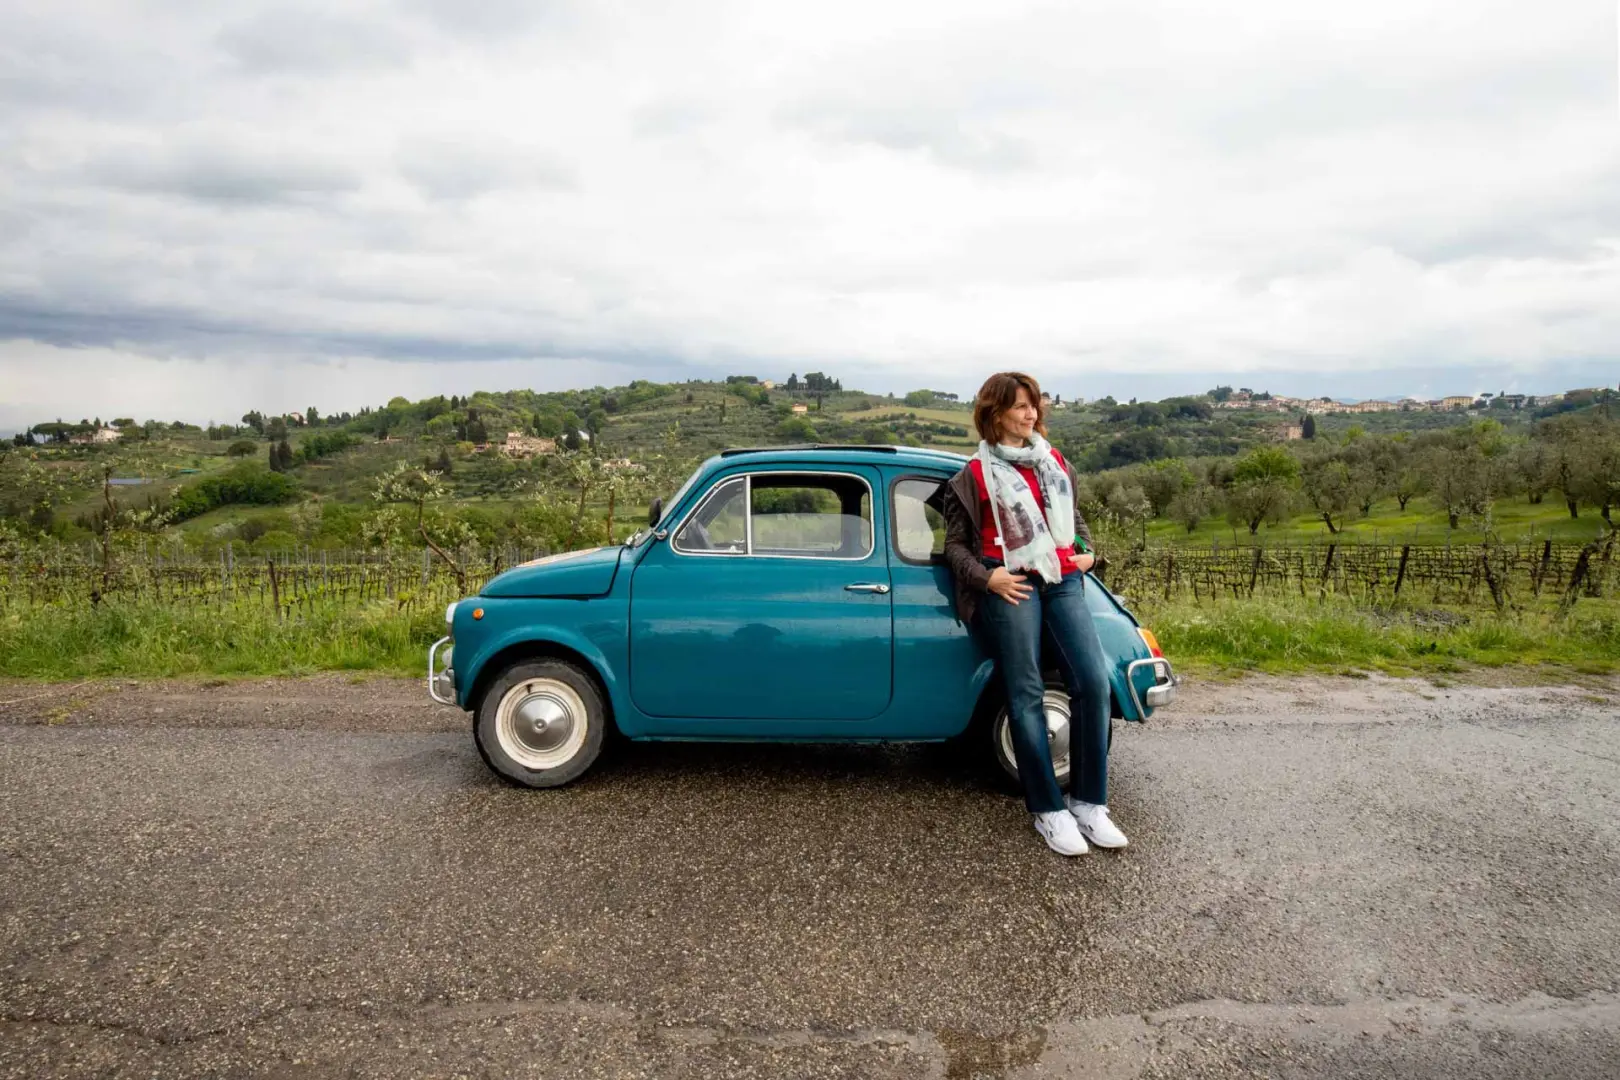 Conoce Florencia, recorre la Toscana en un Fiat 500, devora los vinos italianos en un cata y  posa ante la torre inclinada de Pisa.